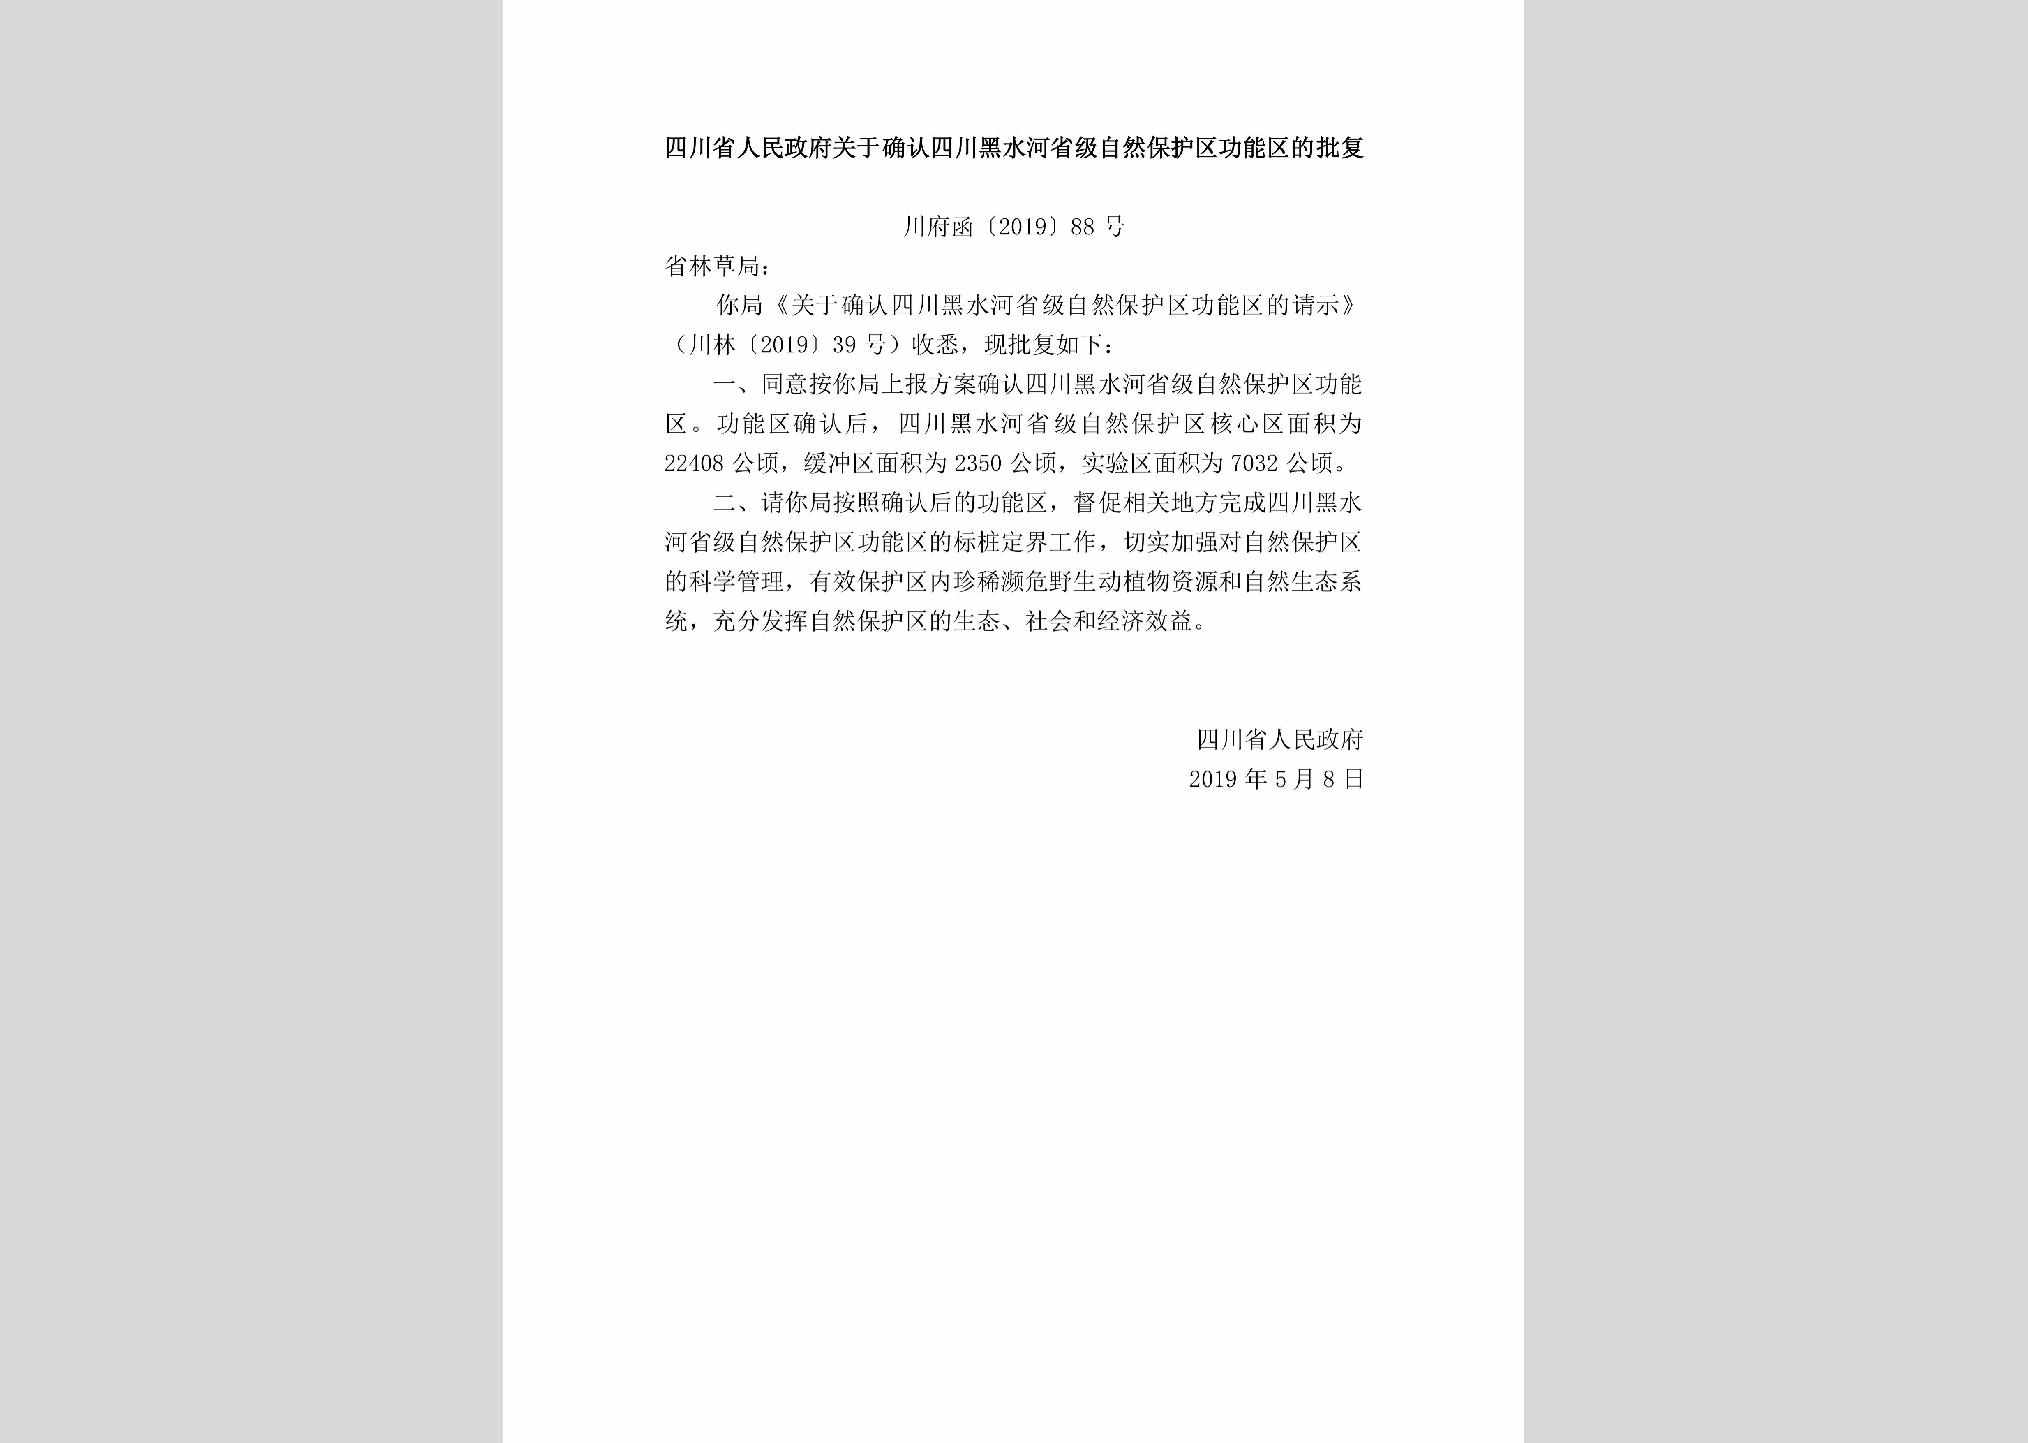 川府函[2019]88号：四川省人民政府关于确认四川黑水河省级自然保护区功能区的批复